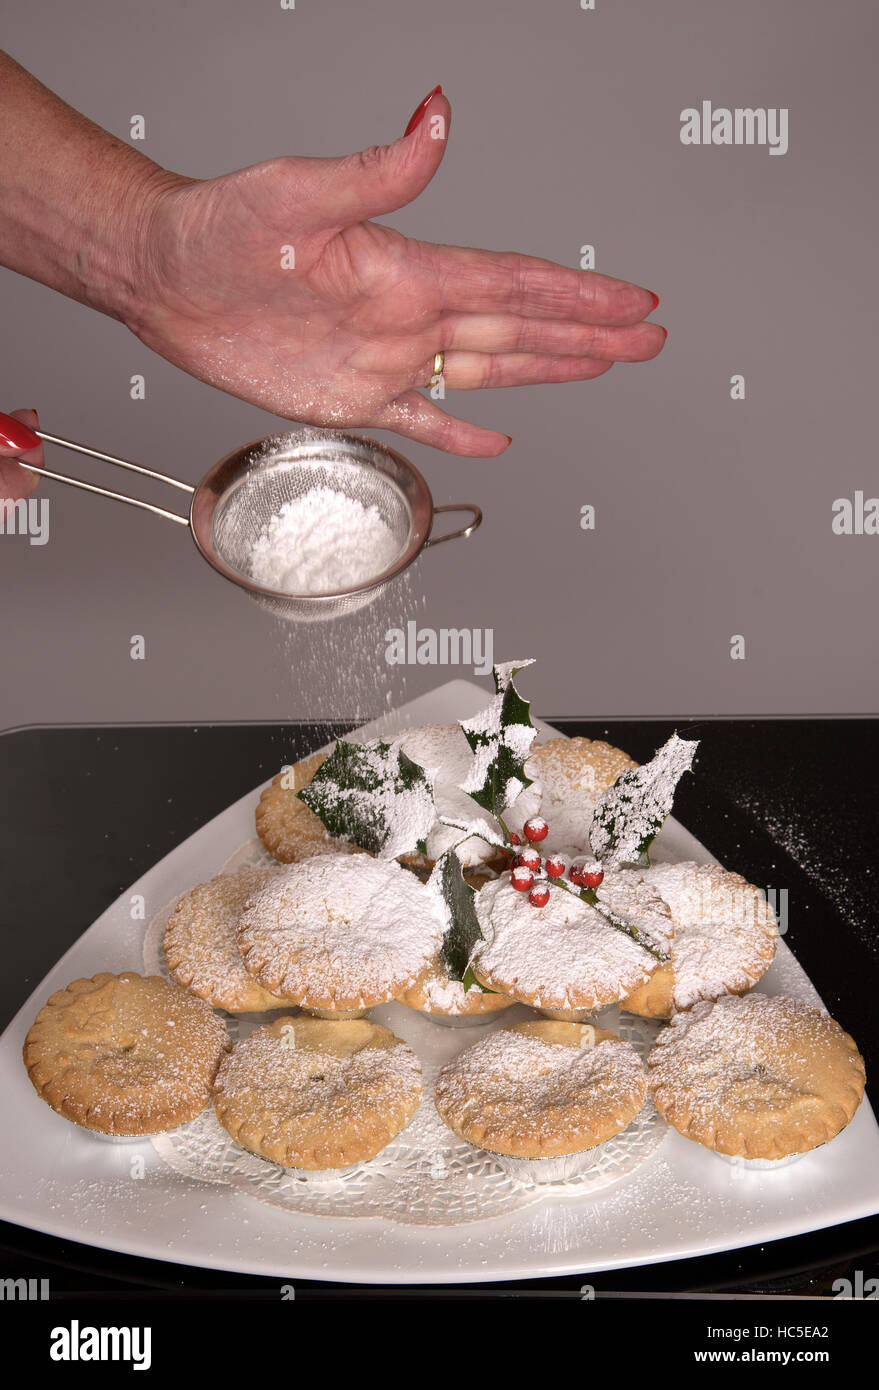 Tritare tradizionali torte con un rivestimento di zucchero a velo e un rametto di agrifoglio Foto Stock